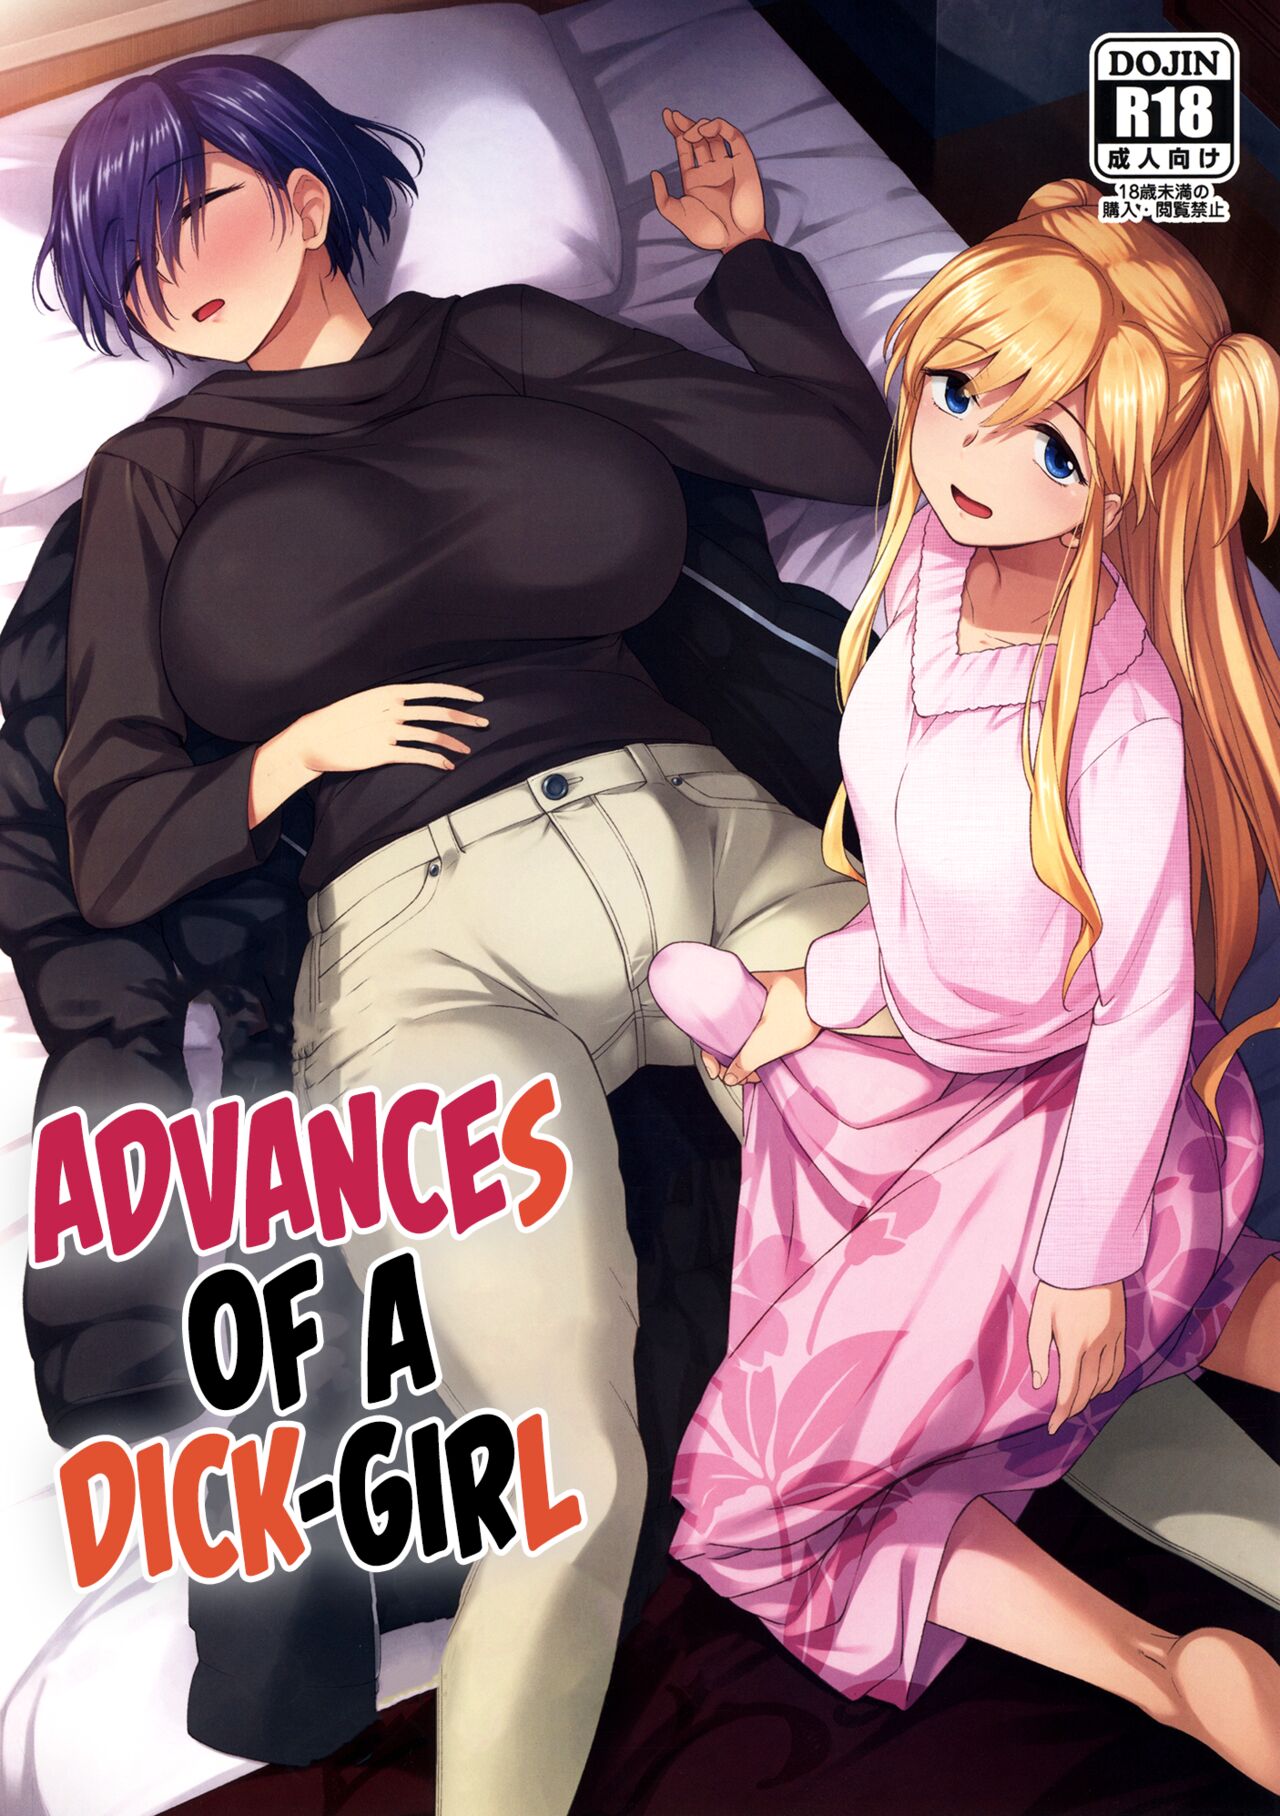 Chicks with dicks anime